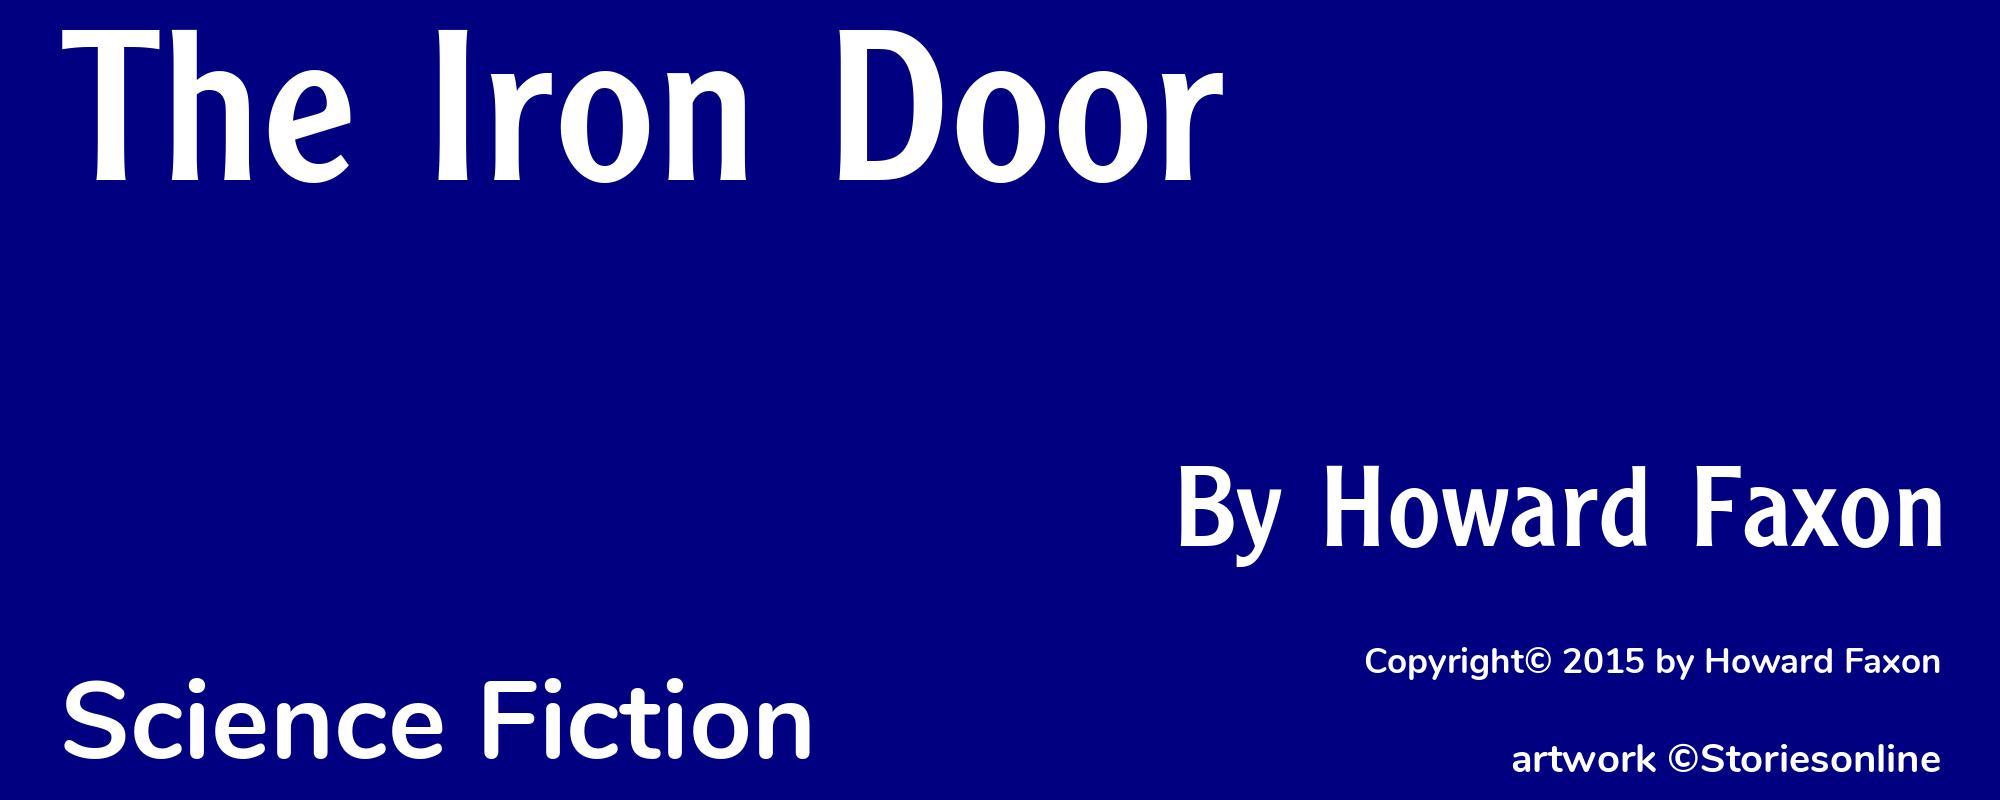 The Iron Door - Cover